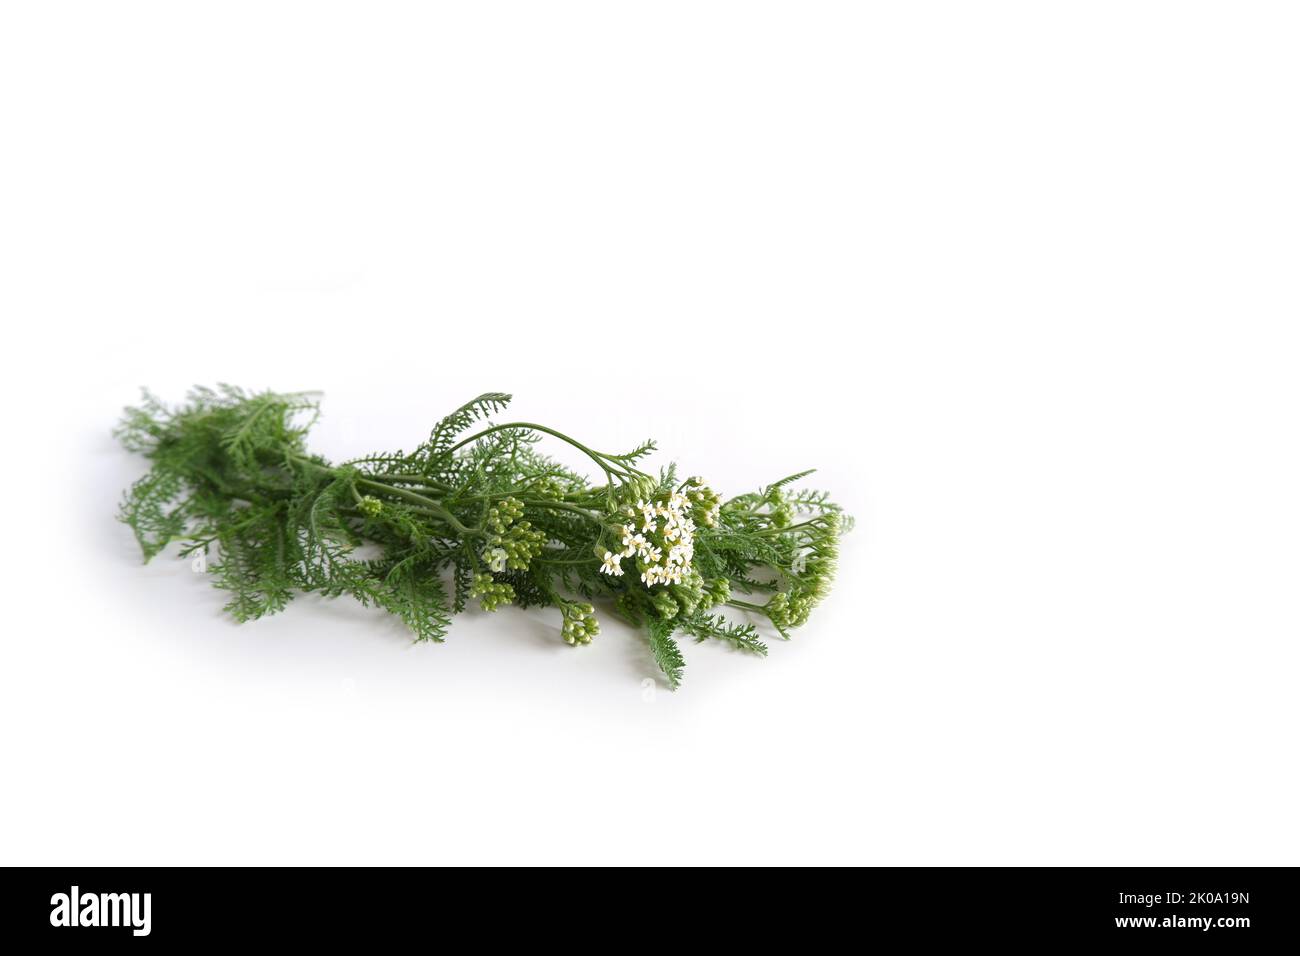 Erpice vegetale medicinale con foglie, fiori bianchi e germogli su sfondo bianco. Foto Stock